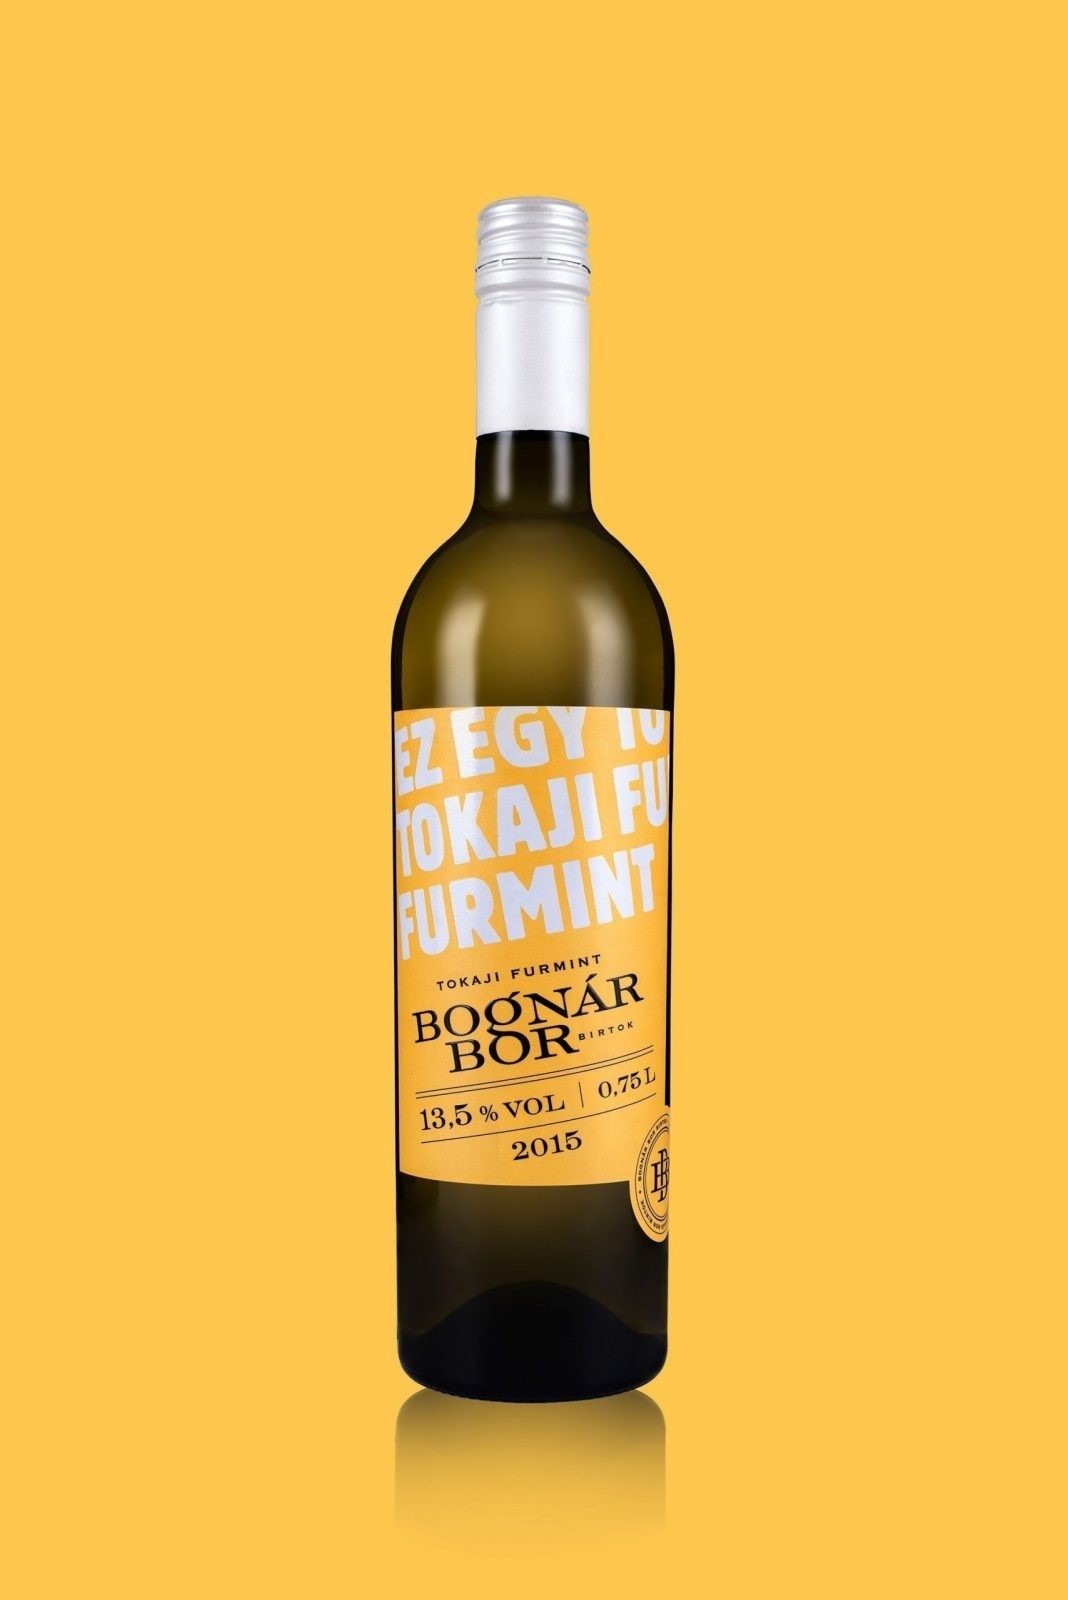 kissmiklos – Bognár Bor Birtok (Bognár Winery)